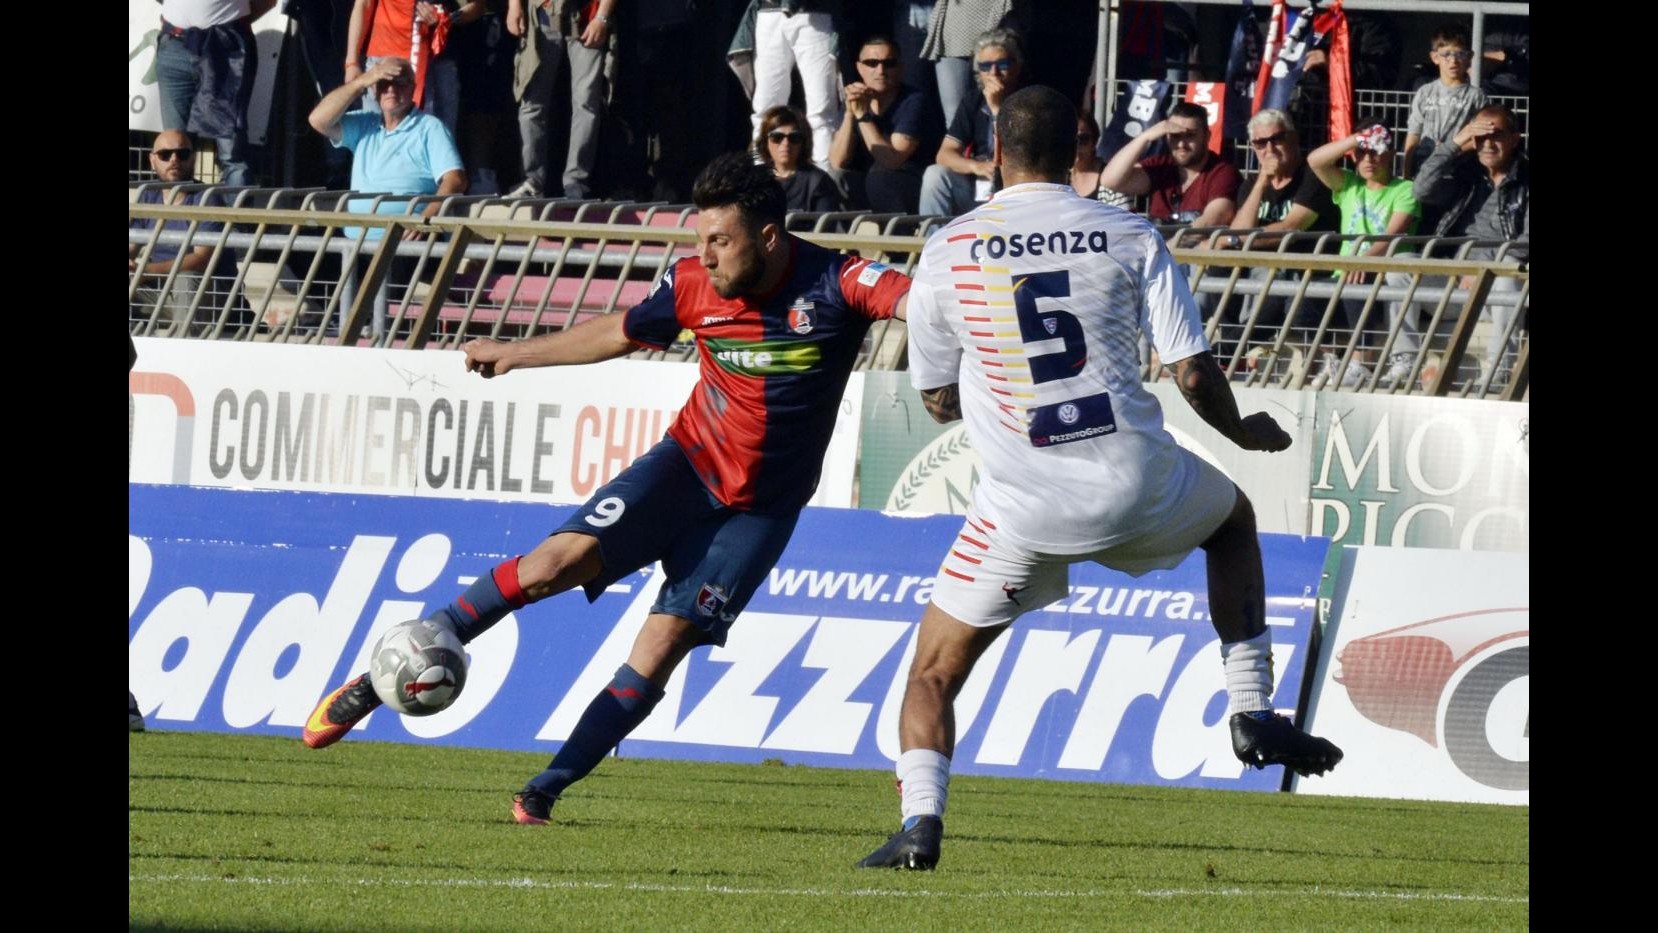 FOTO Playoff di Lega Pro, Sambenedettese-Lecce 1-1